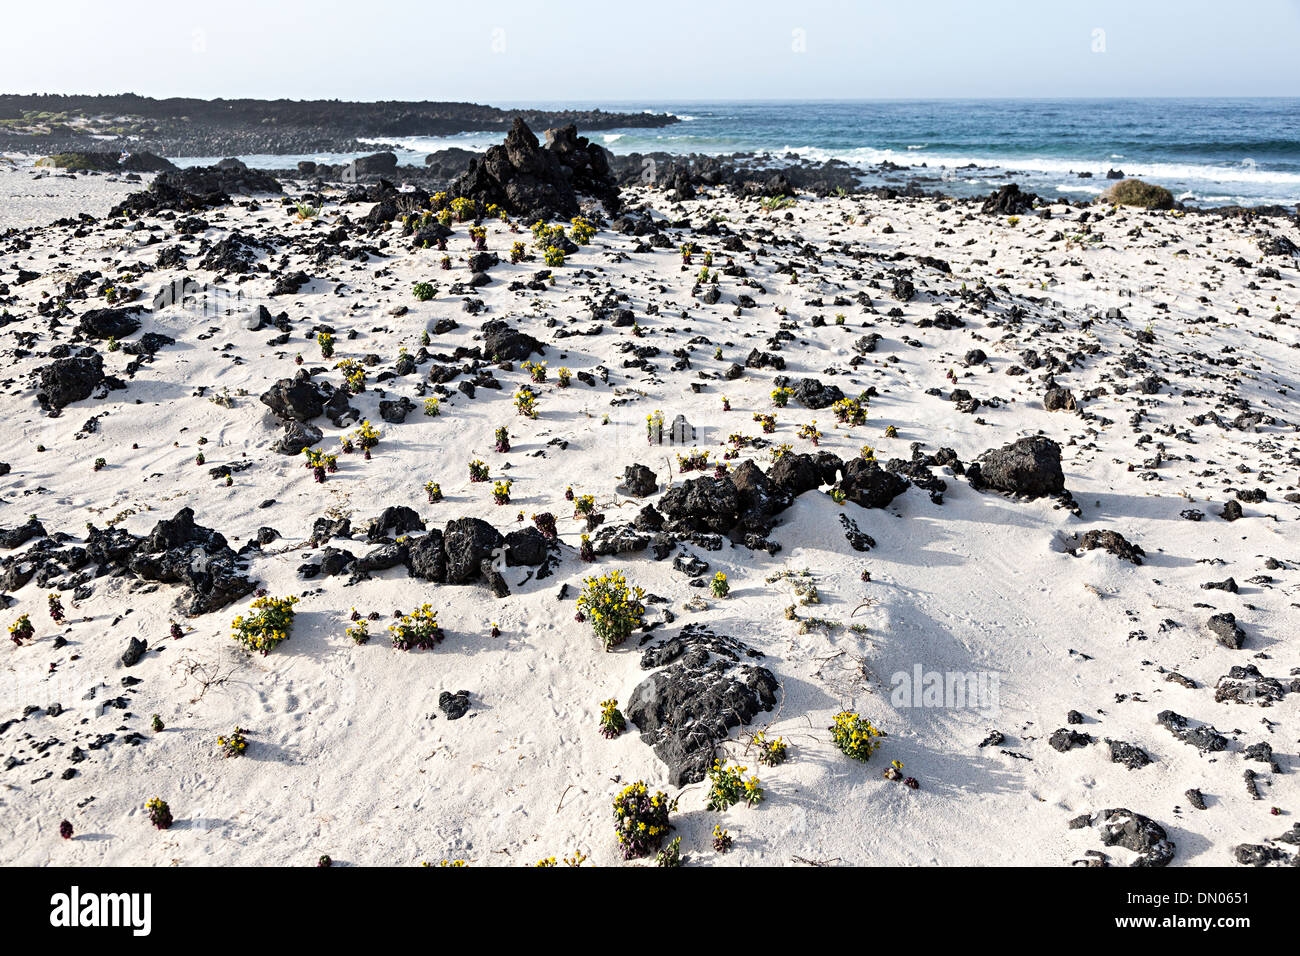 La sabbia bianca e nera lava rocce al Caleton Blanco beach, Lanzarote, Isole Canarie, Spagna Foto Stock